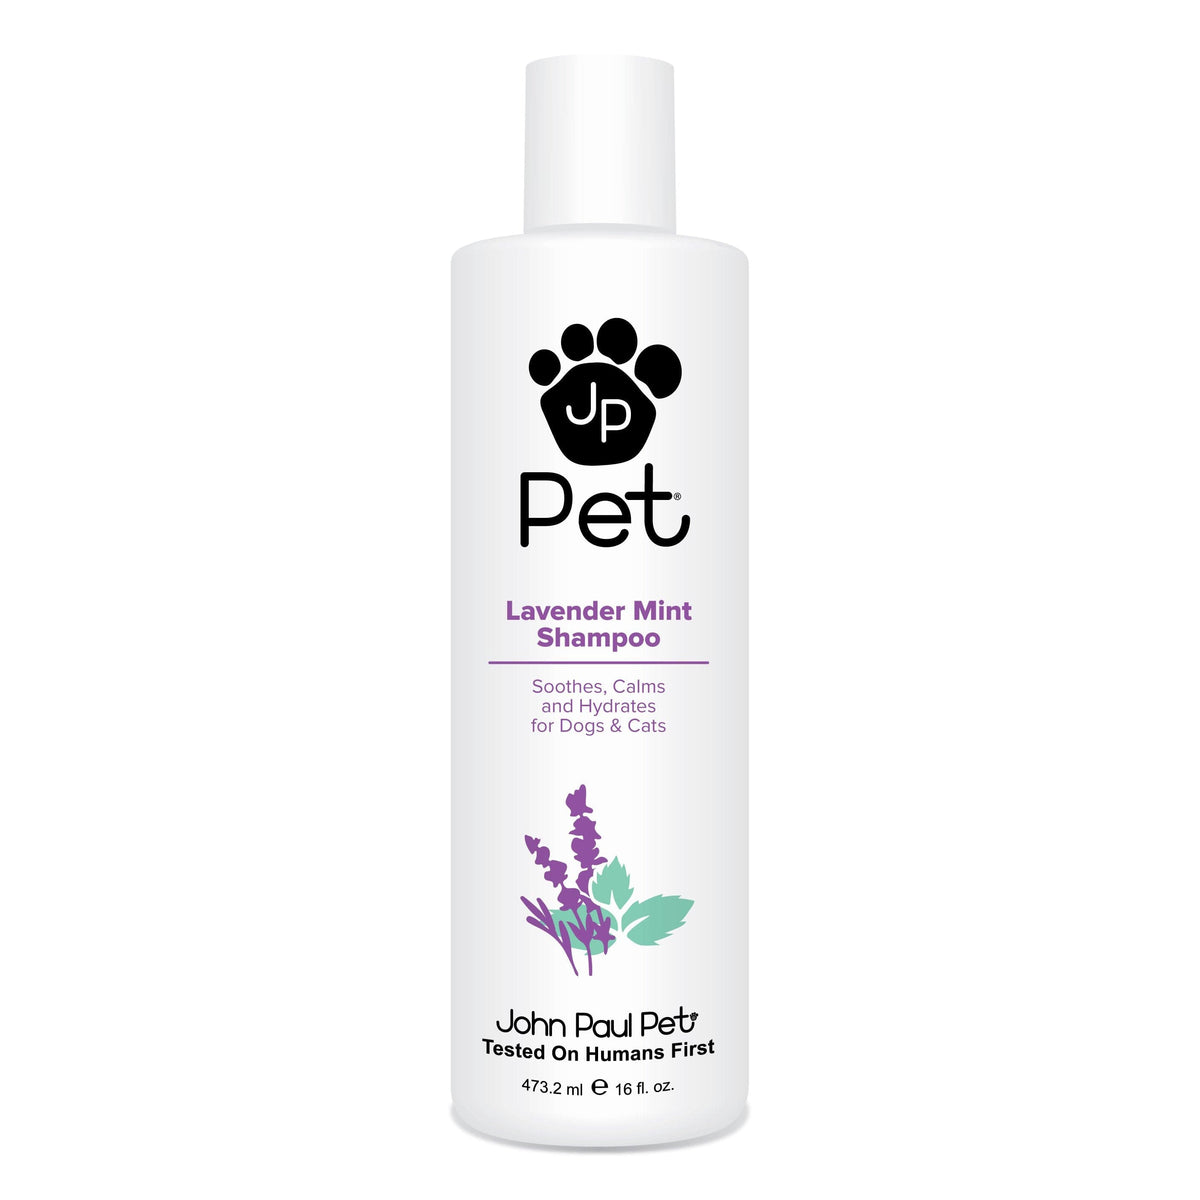 JP Pet Lavender Mint Shampoo 473ml Pet - JP Pet - Luxe Pacifique